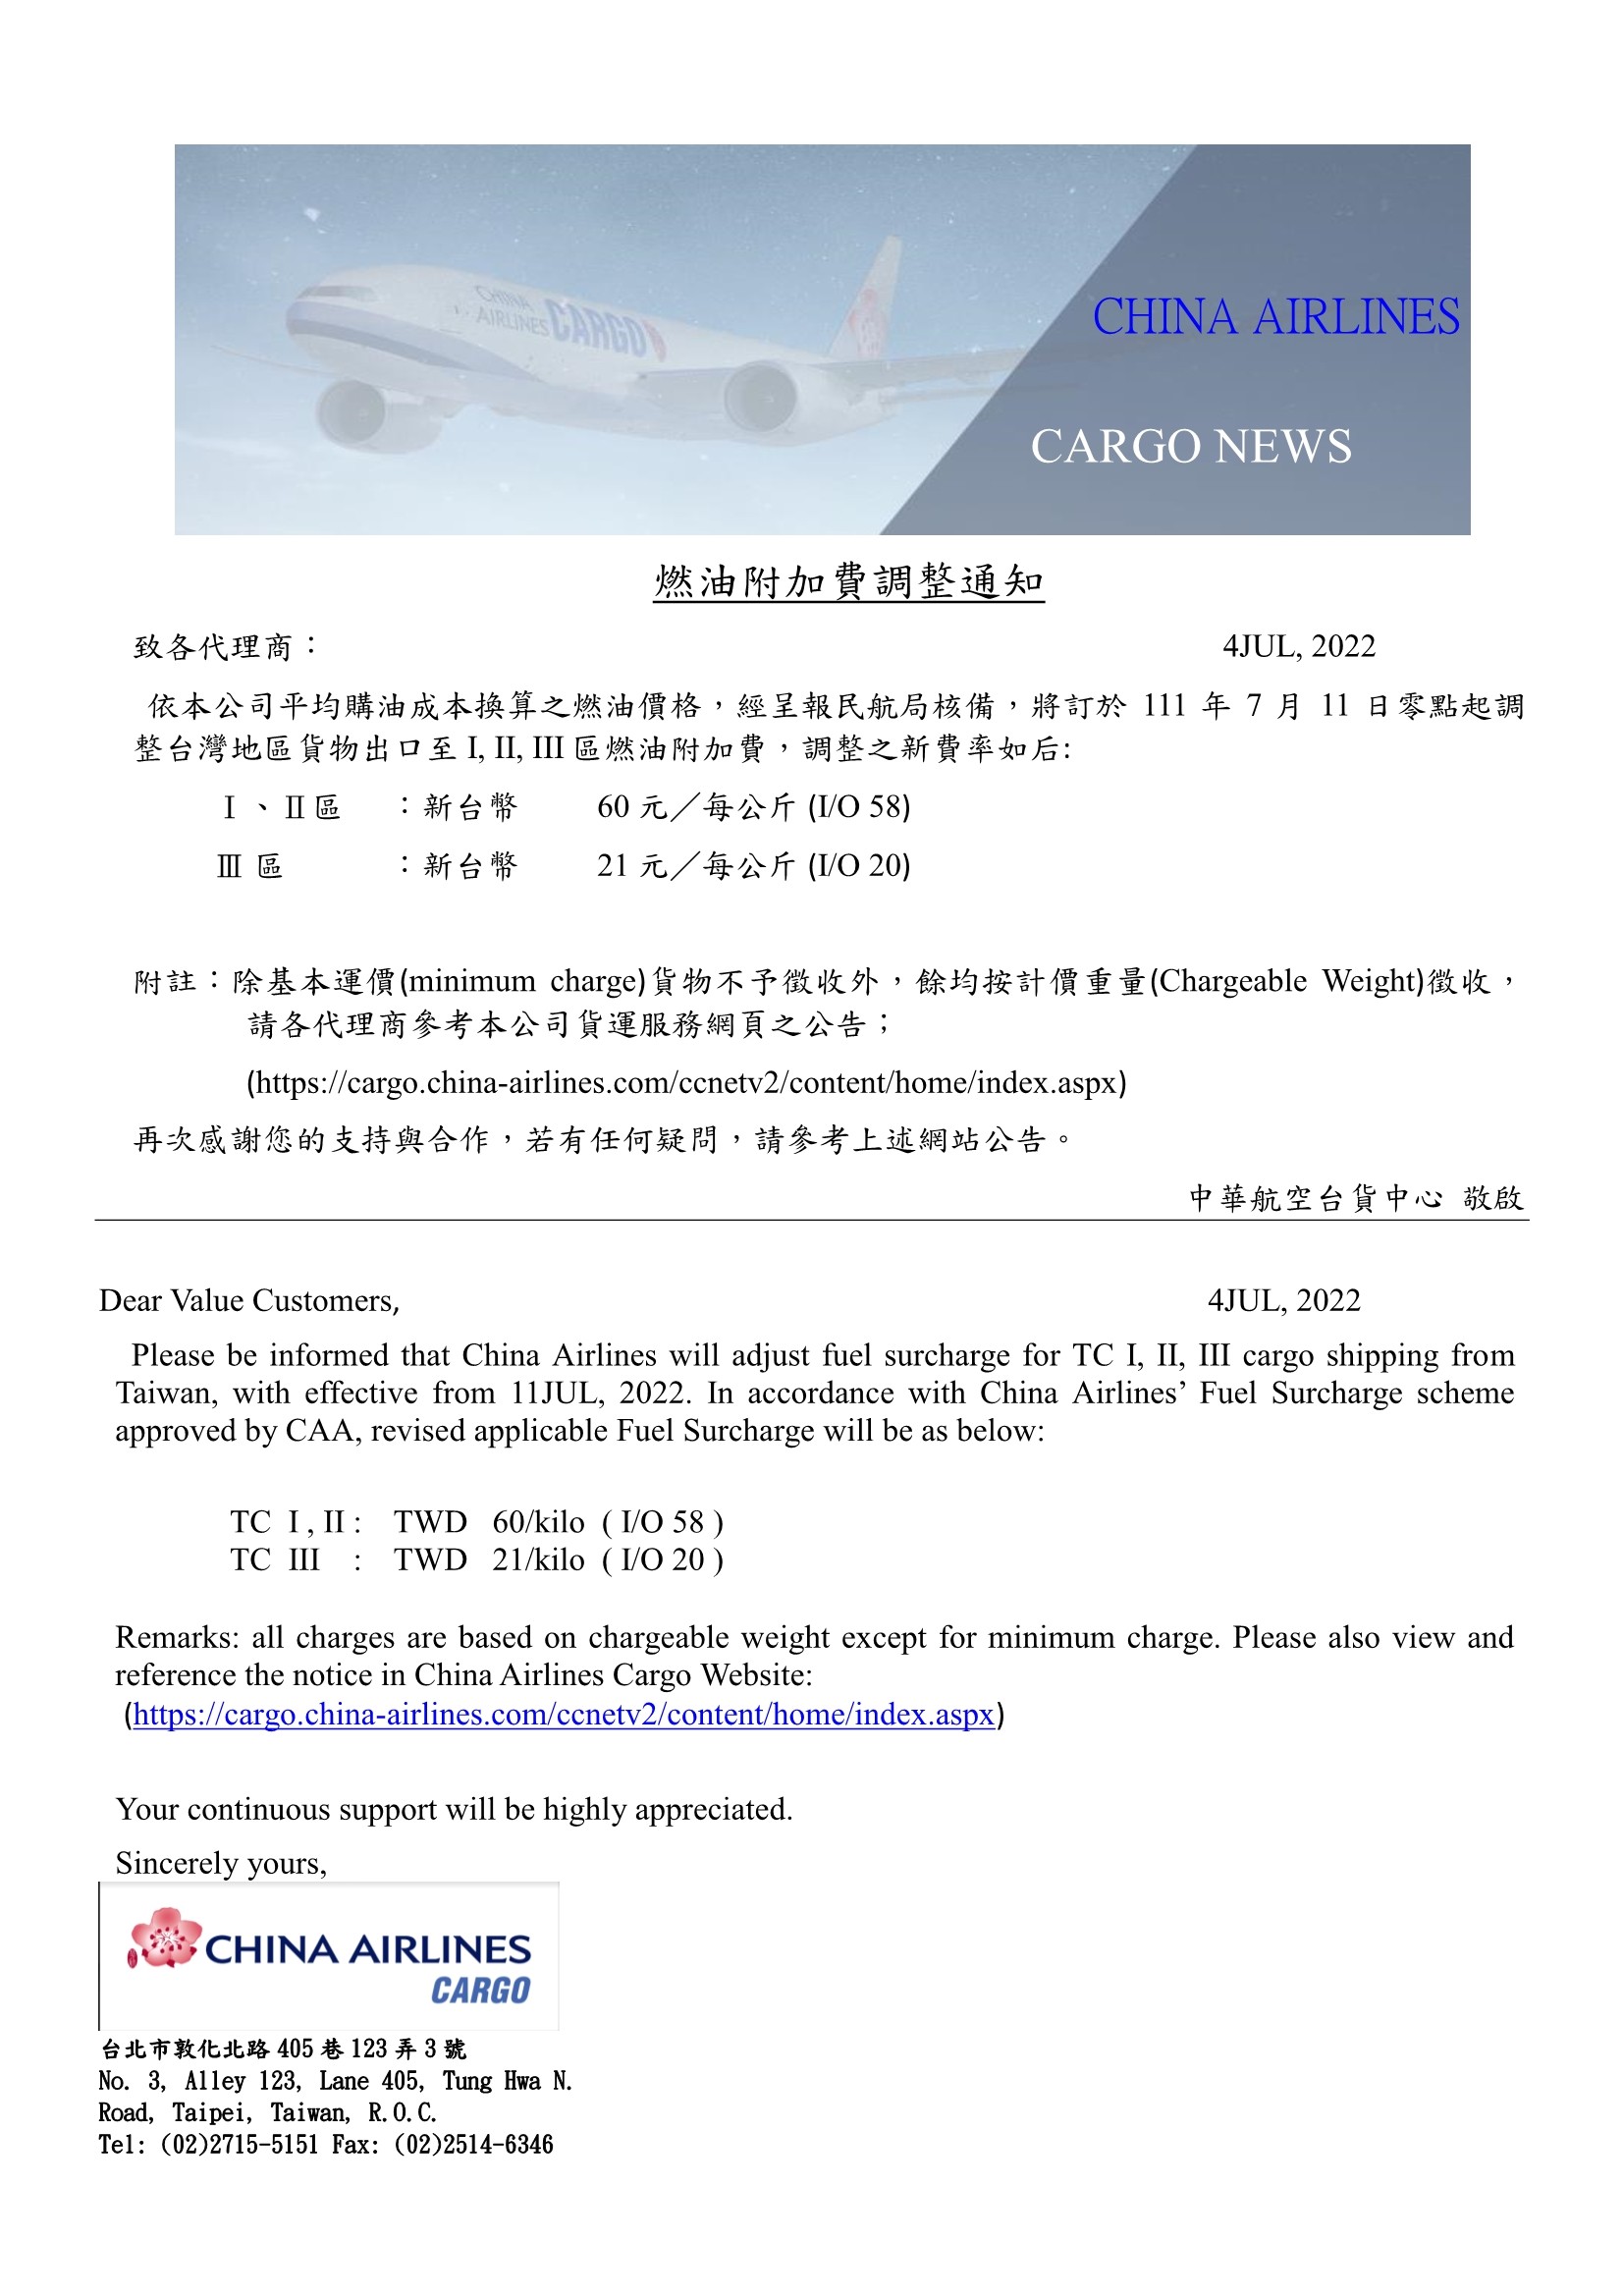 中華航空2022年7月11日台灣區貨運燃油附加費調整公告.jpg